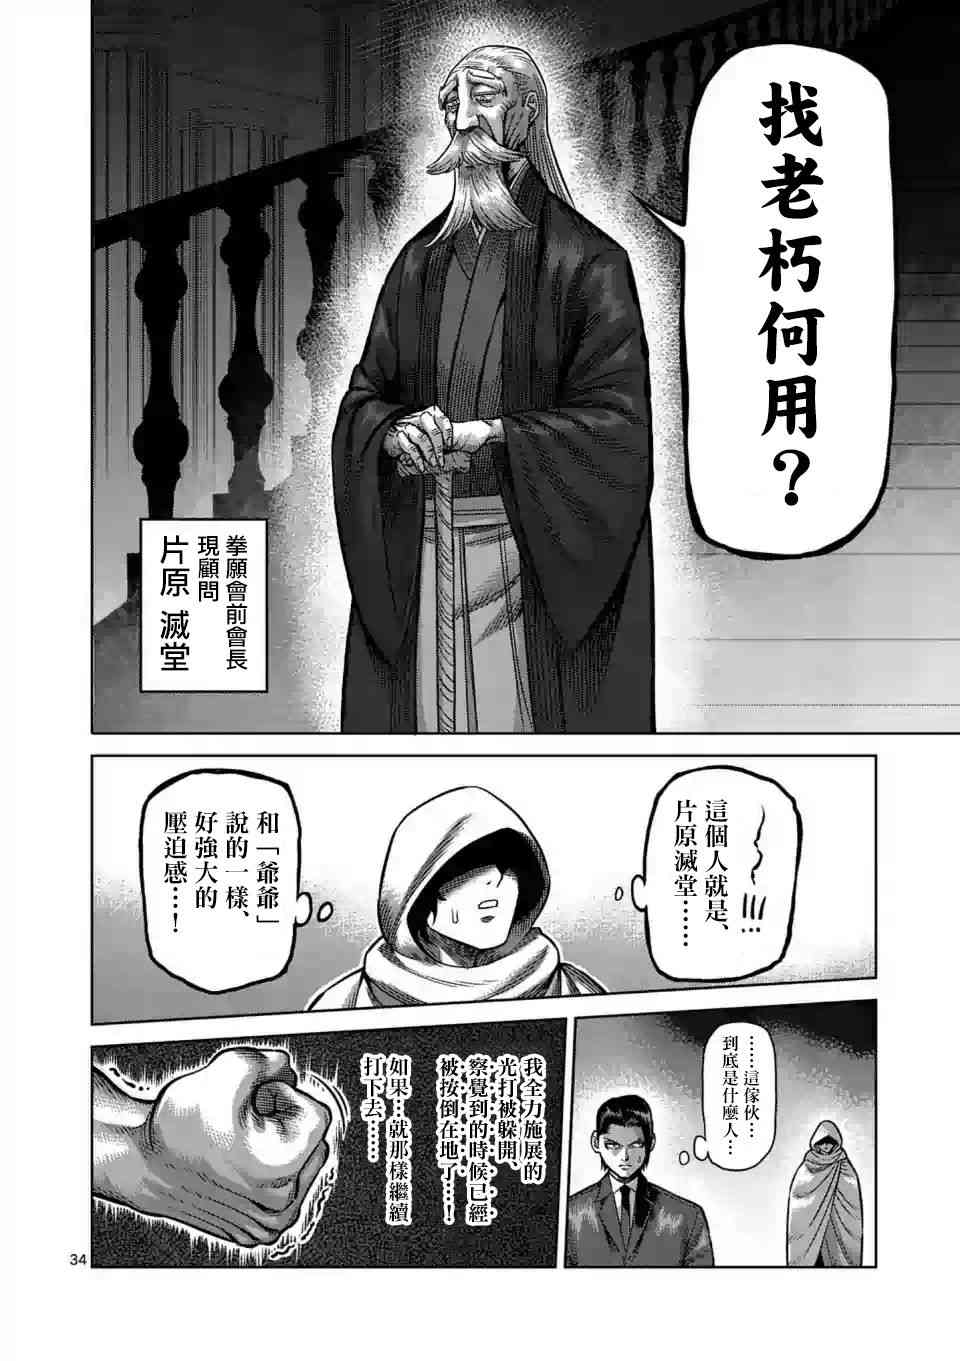 【漫画】拳愿奥米迦 #01 - acfun弹幕网 - 认真你